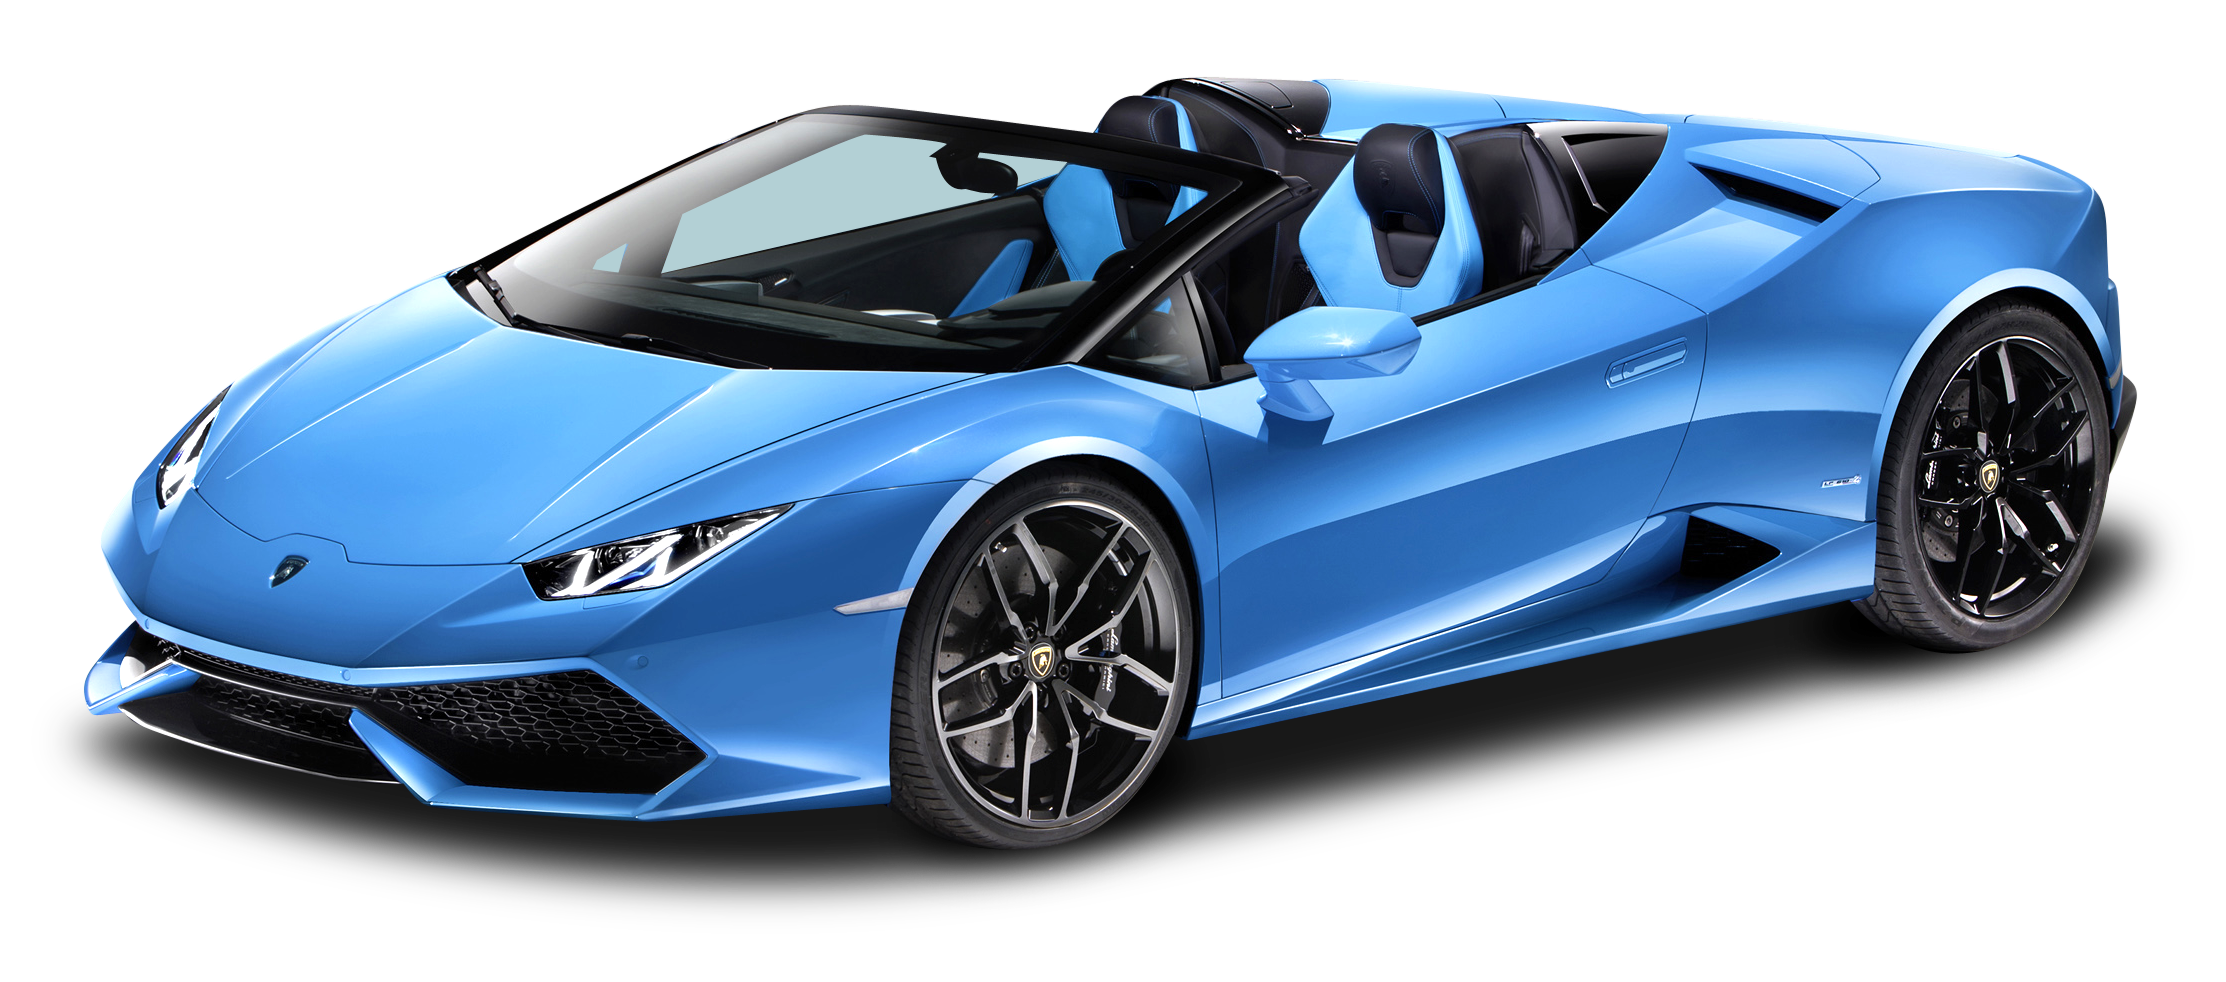 Lamborghini convertible PNG Image haute qualité